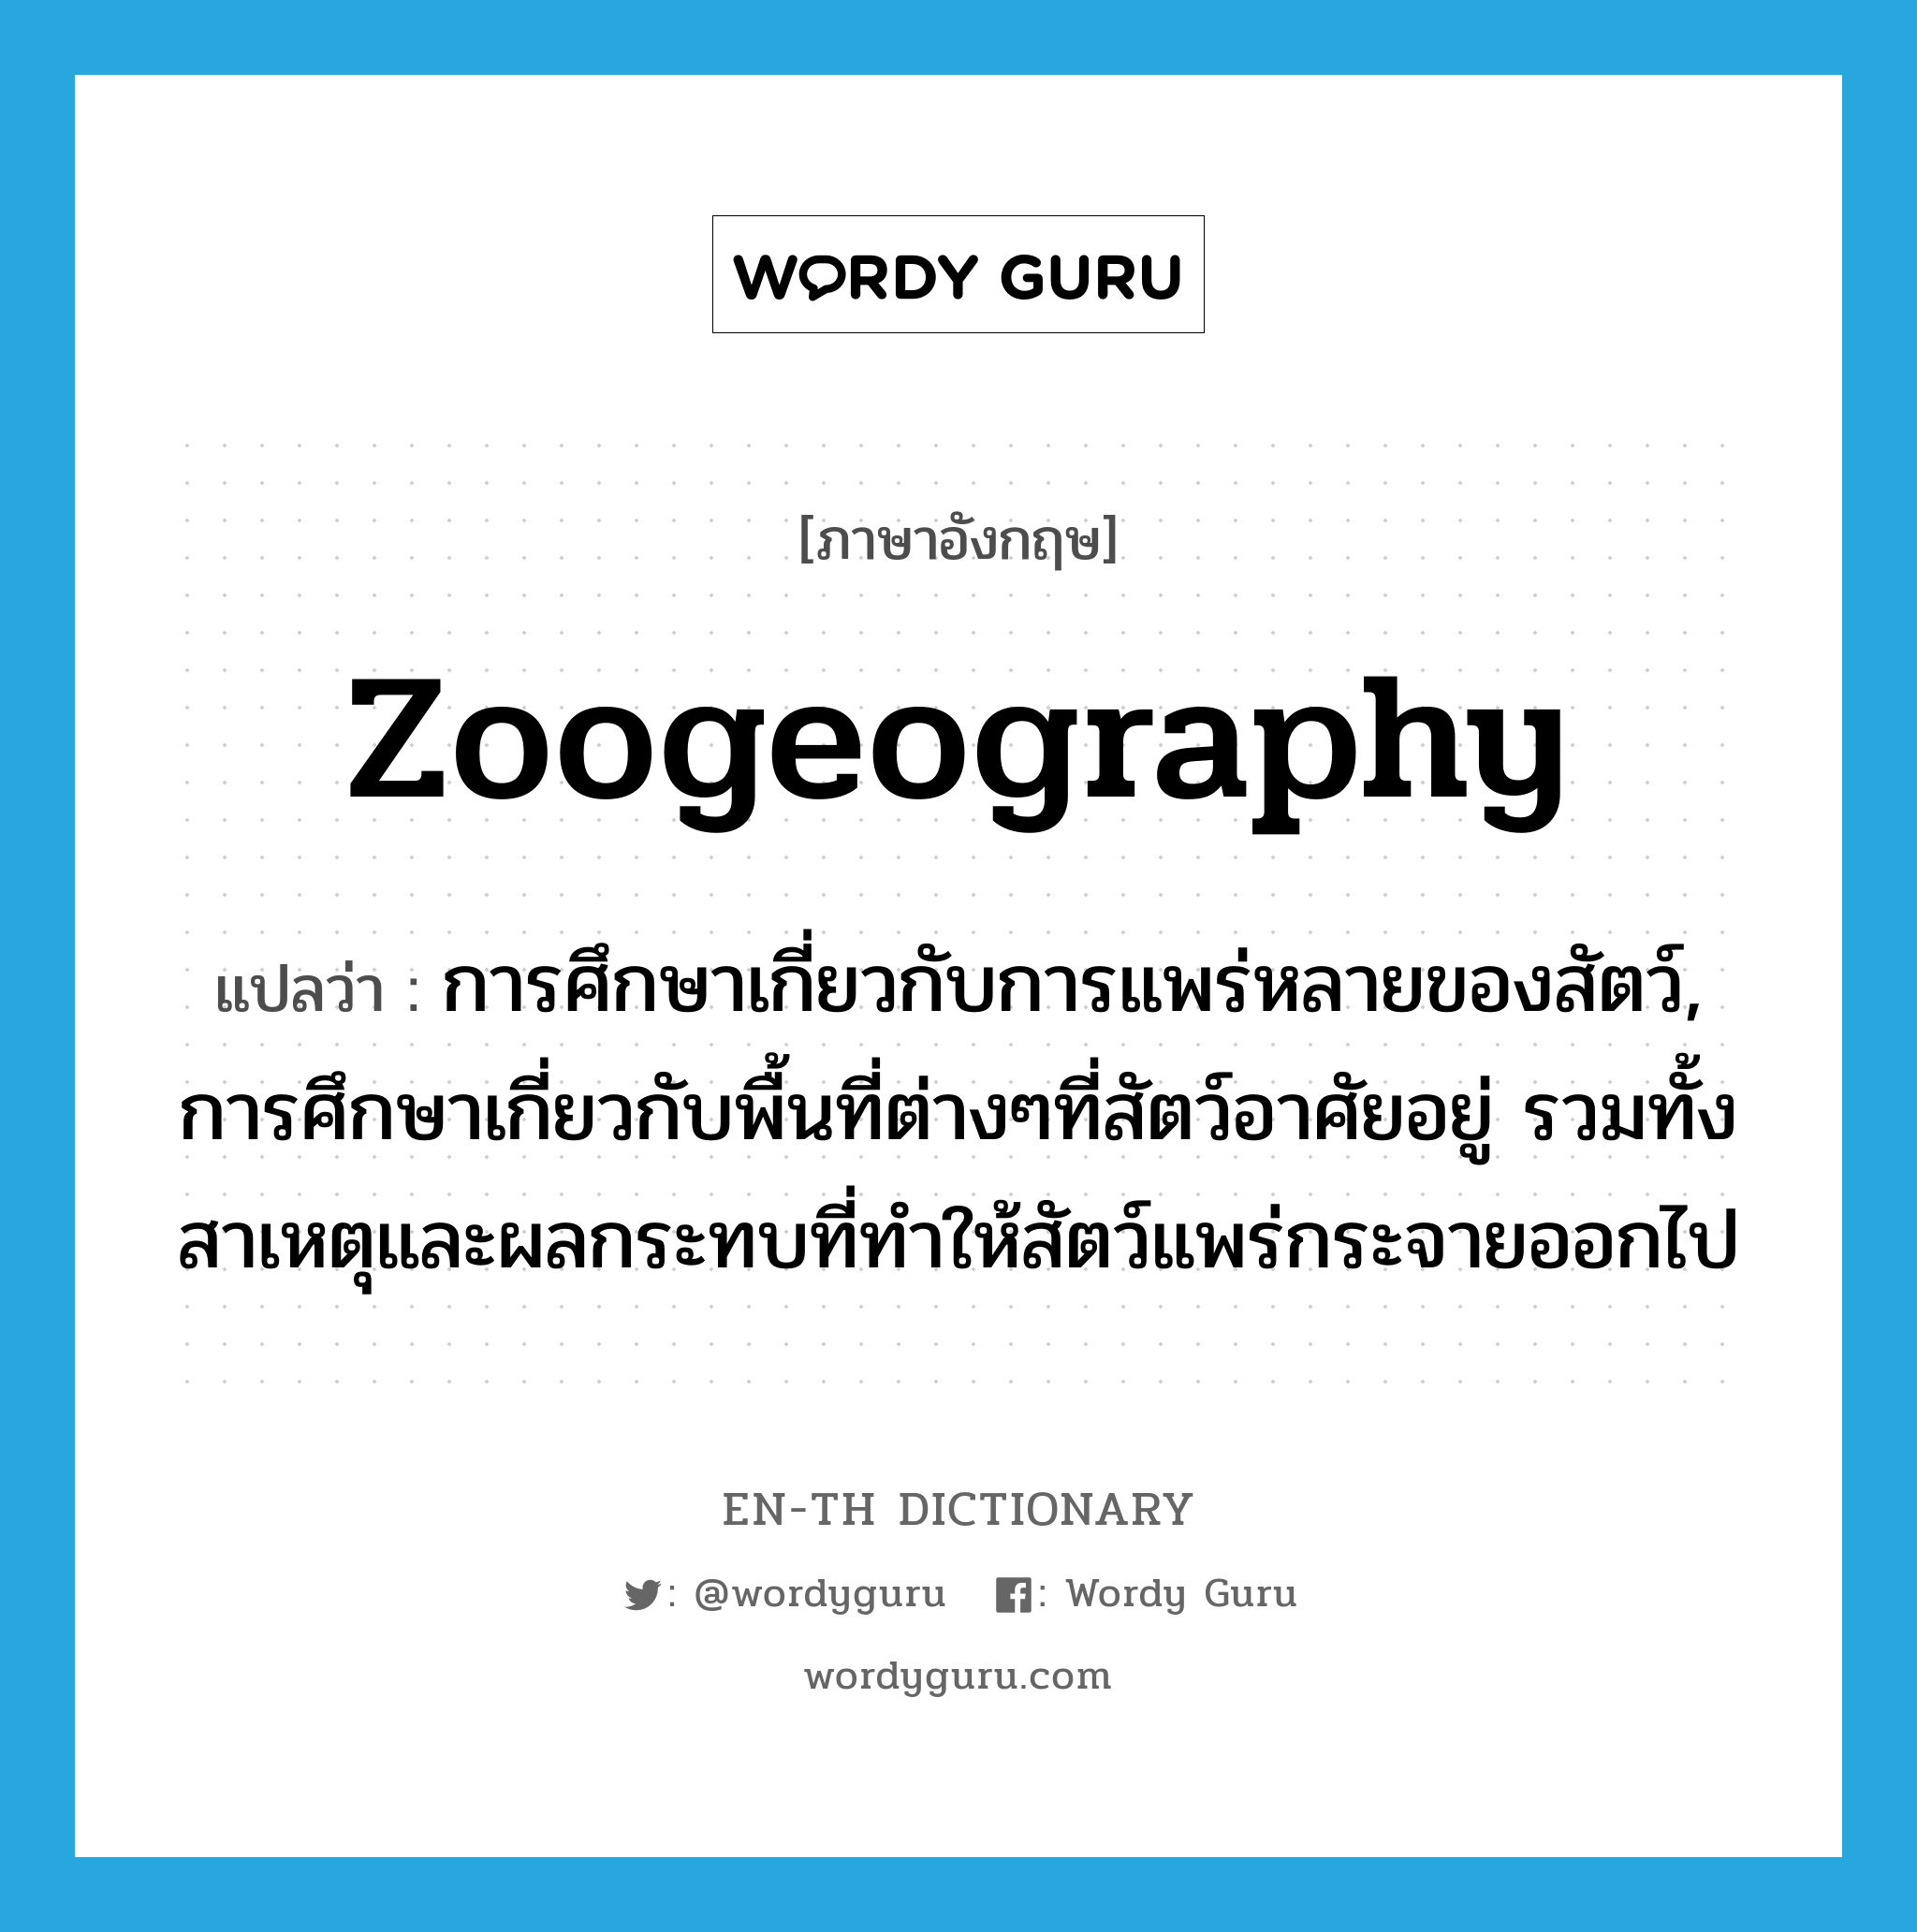 zoogeography แปลว่า?, คำศัพท์ภาษาอังกฤษ zoogeography แปลว่า การศึกษาเกี่ยวกับการแพร่หลายของสัตว์, การศึกษาเกี่ยวกับพื้นที่ต่างๆที่สัตว์อาศัยอยู่ รวมทั้งสาเหตุและผลกระทบที่ทำให้สัตว์แพร่กระจายออกไป ประเภท N หมวด N